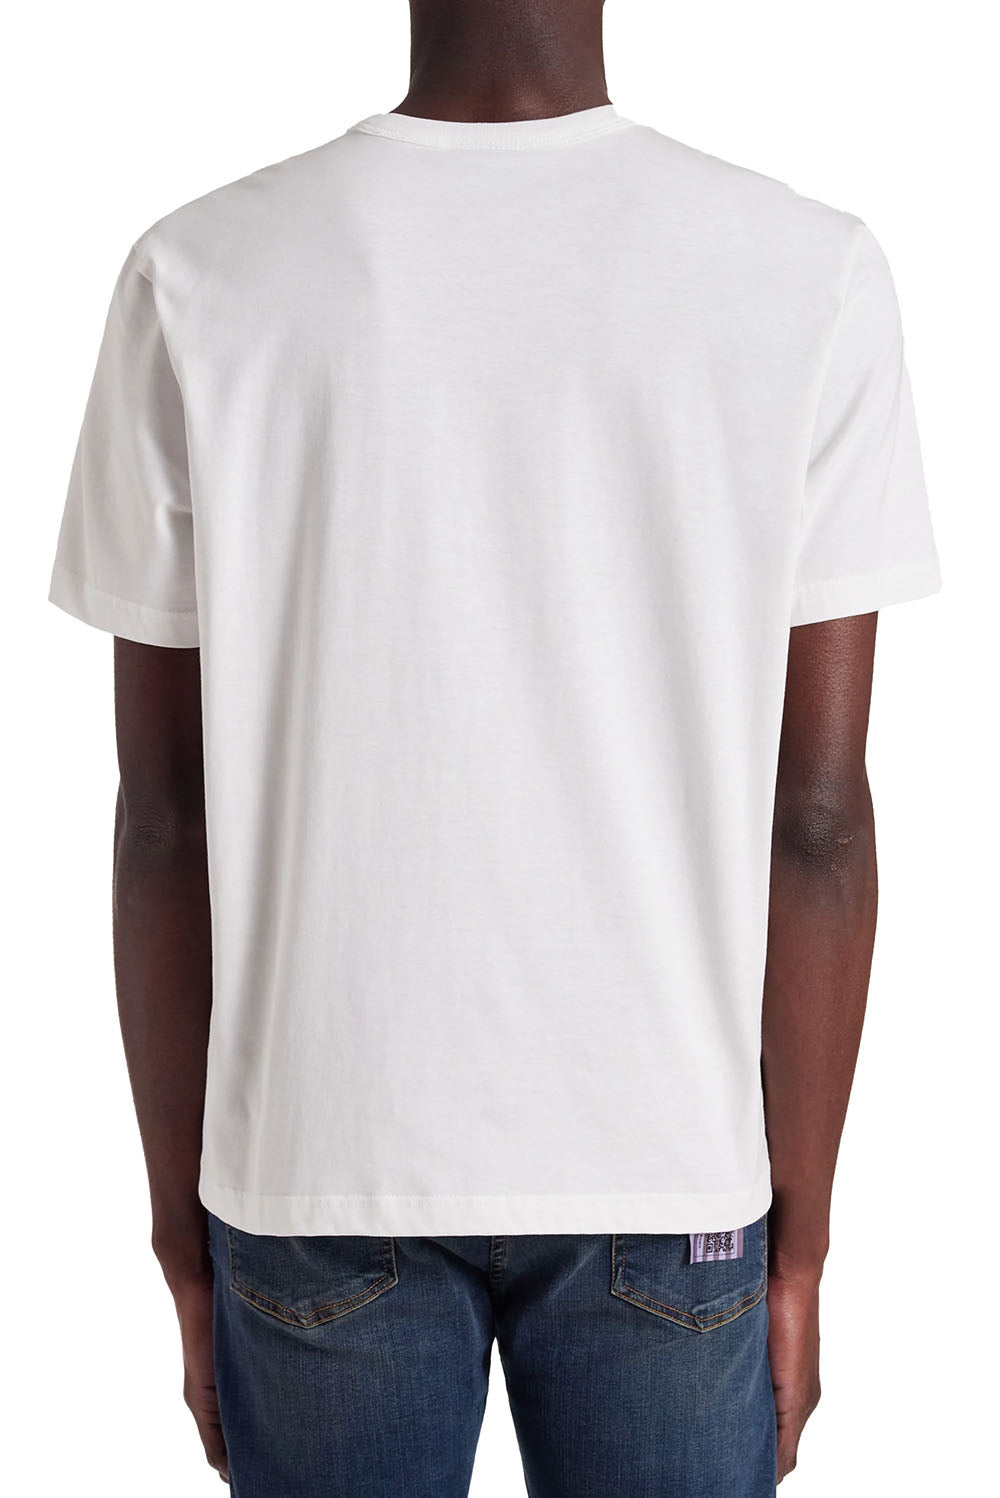  Paul Smith T-shirt Con Stampa Grafica Bianco Uomo - 3